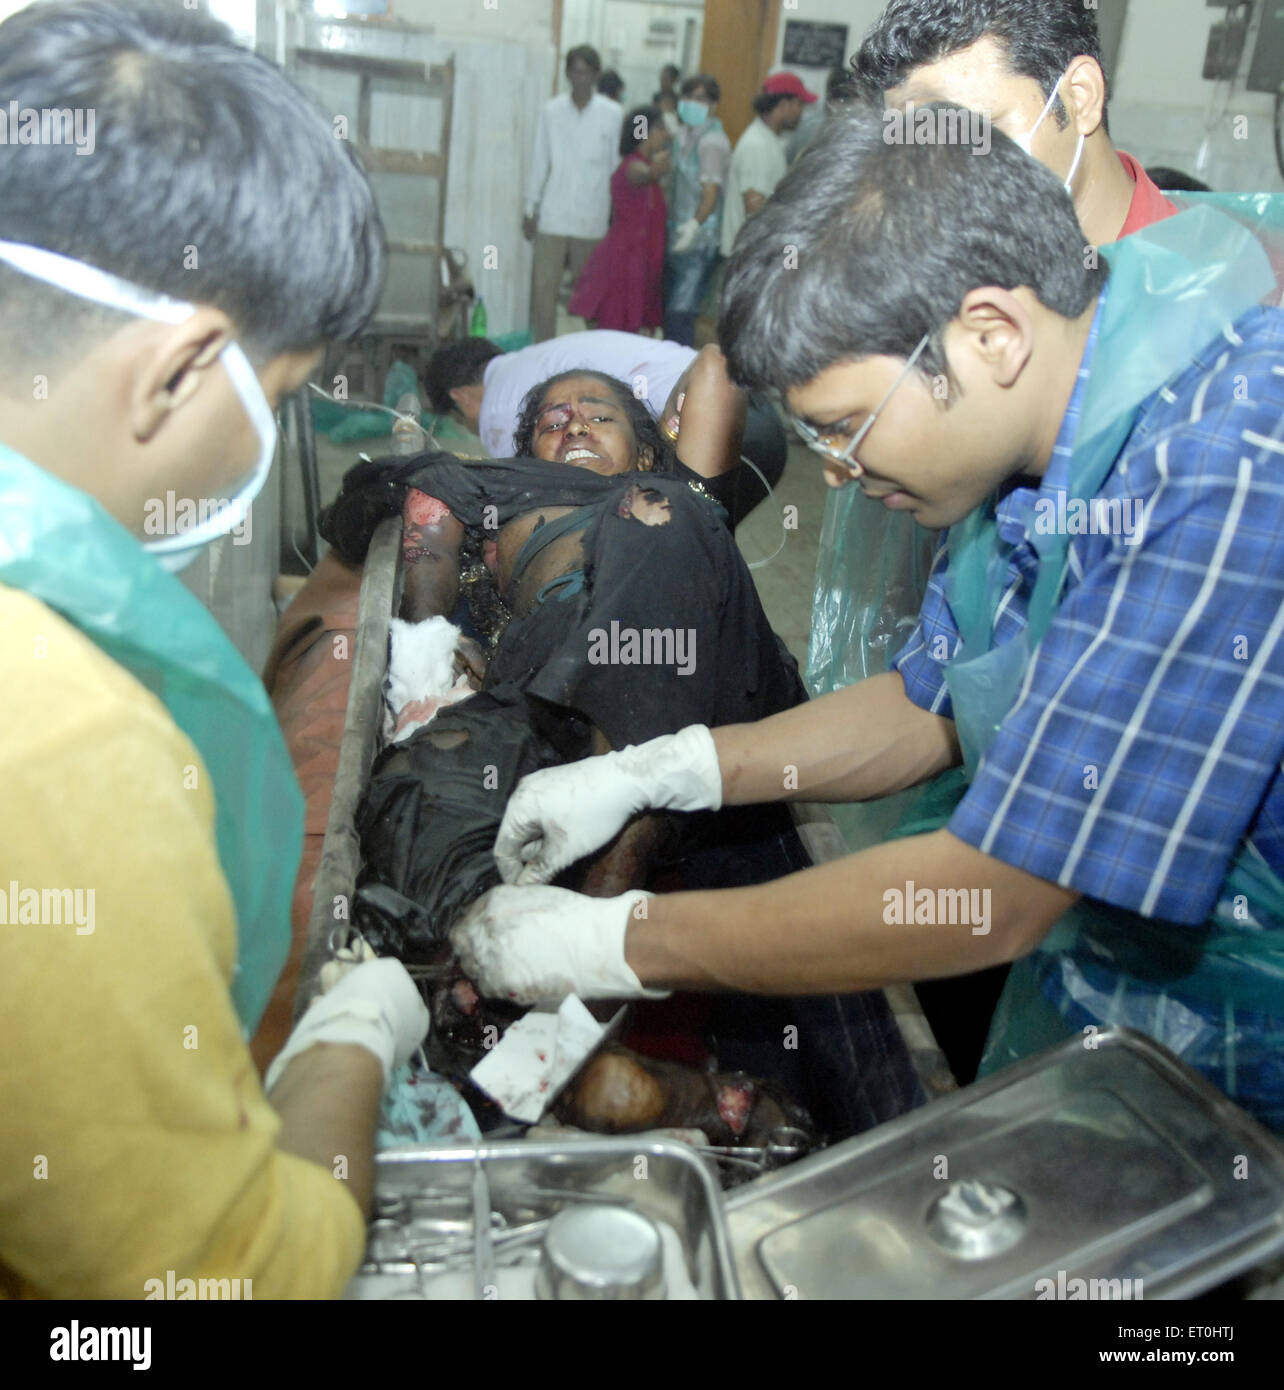 Médecins qui donnent les premiers soins aux personnes blessées dans des tirs du Deccan Mujahedeen attaque terroriste de Bombay Mumbai Maharashtra Inde Banque D'Images